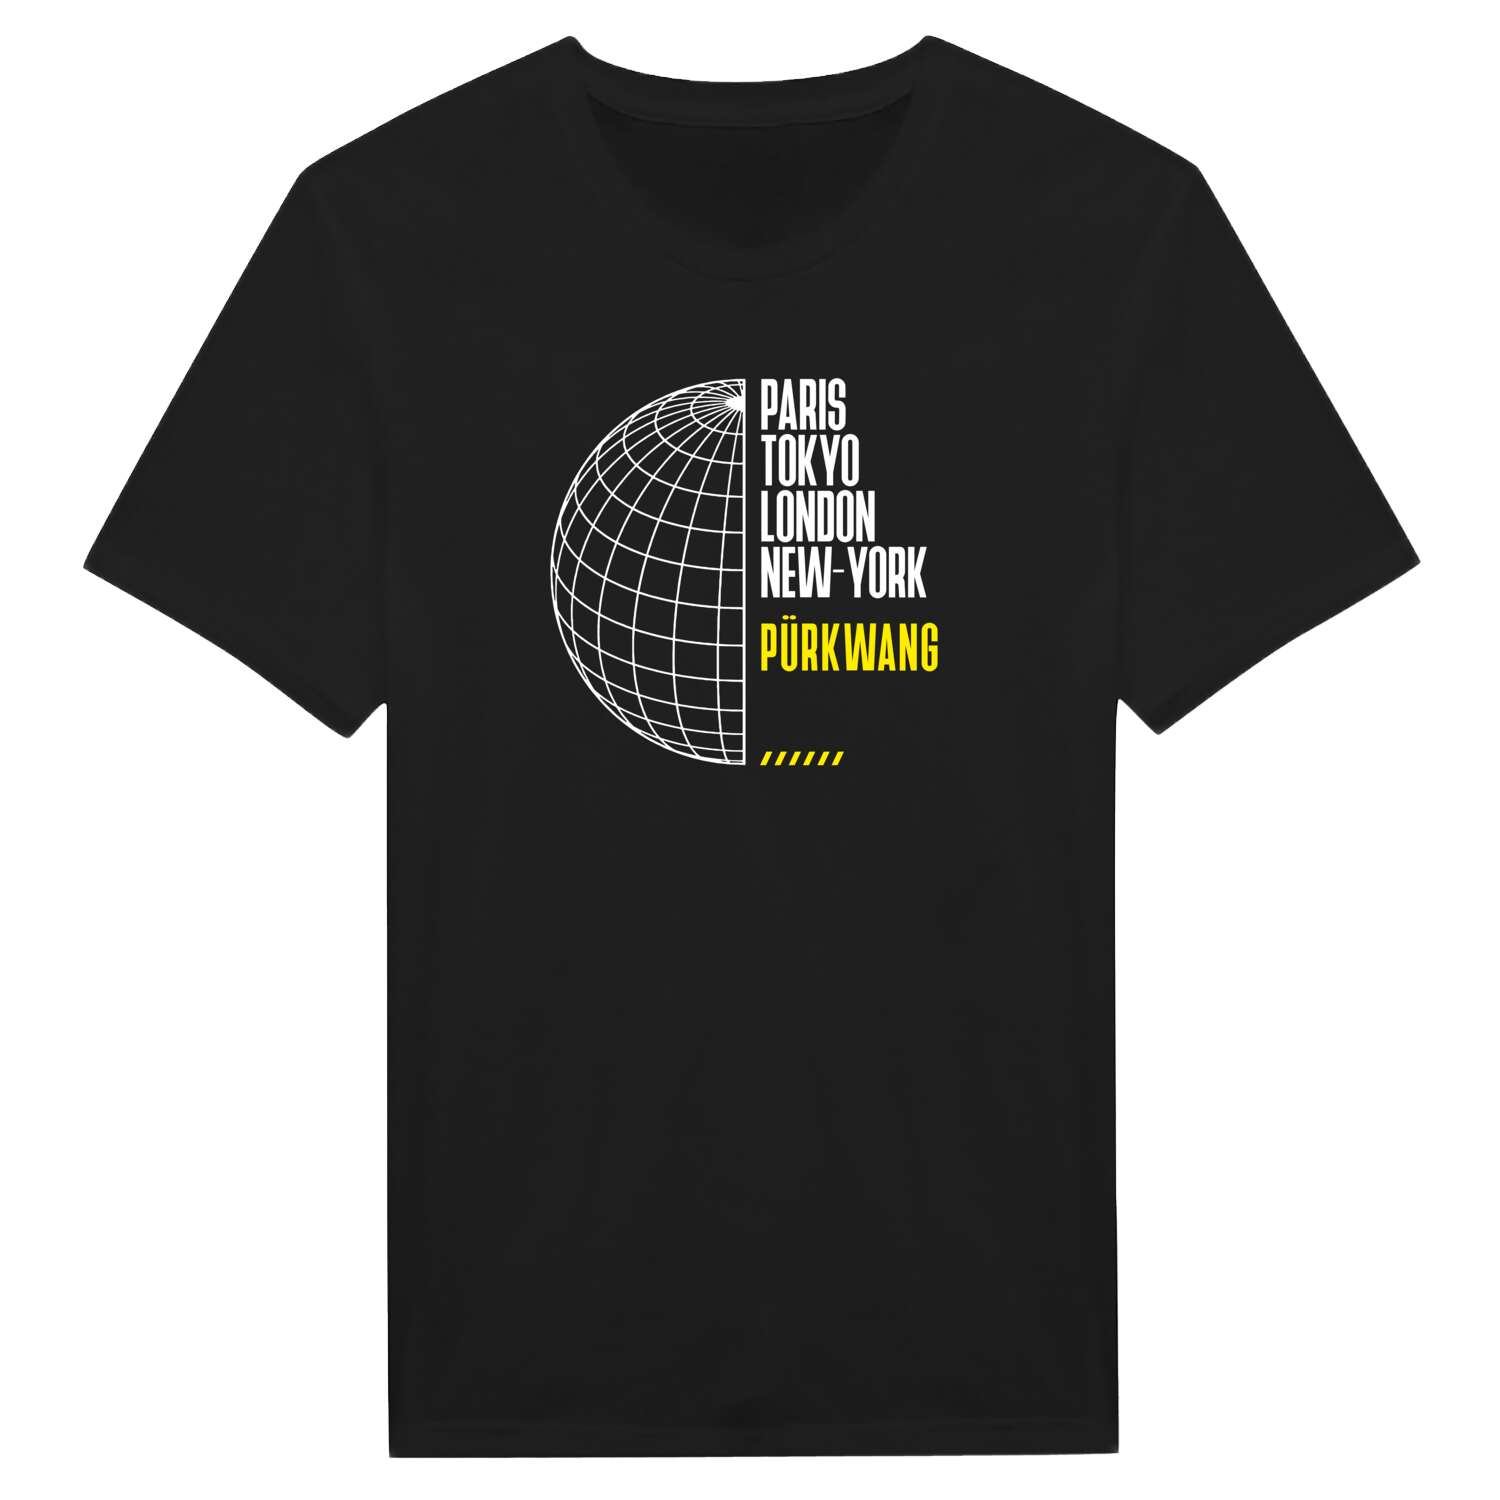 Pürkwang T-Shirt »Paris Tokyo London«